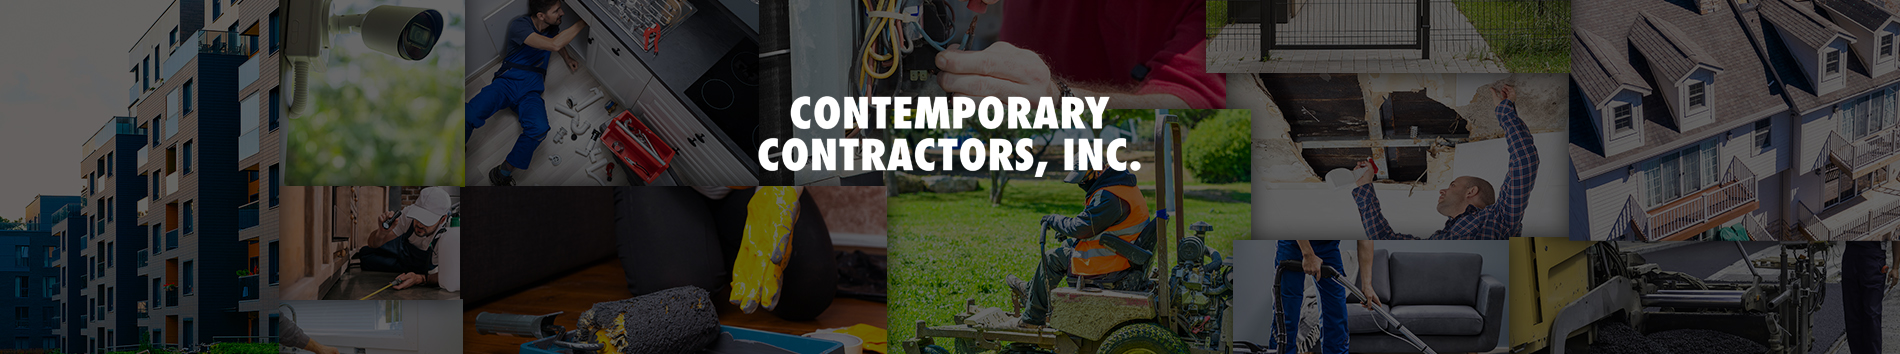 Contemporary Contractors, Inc.